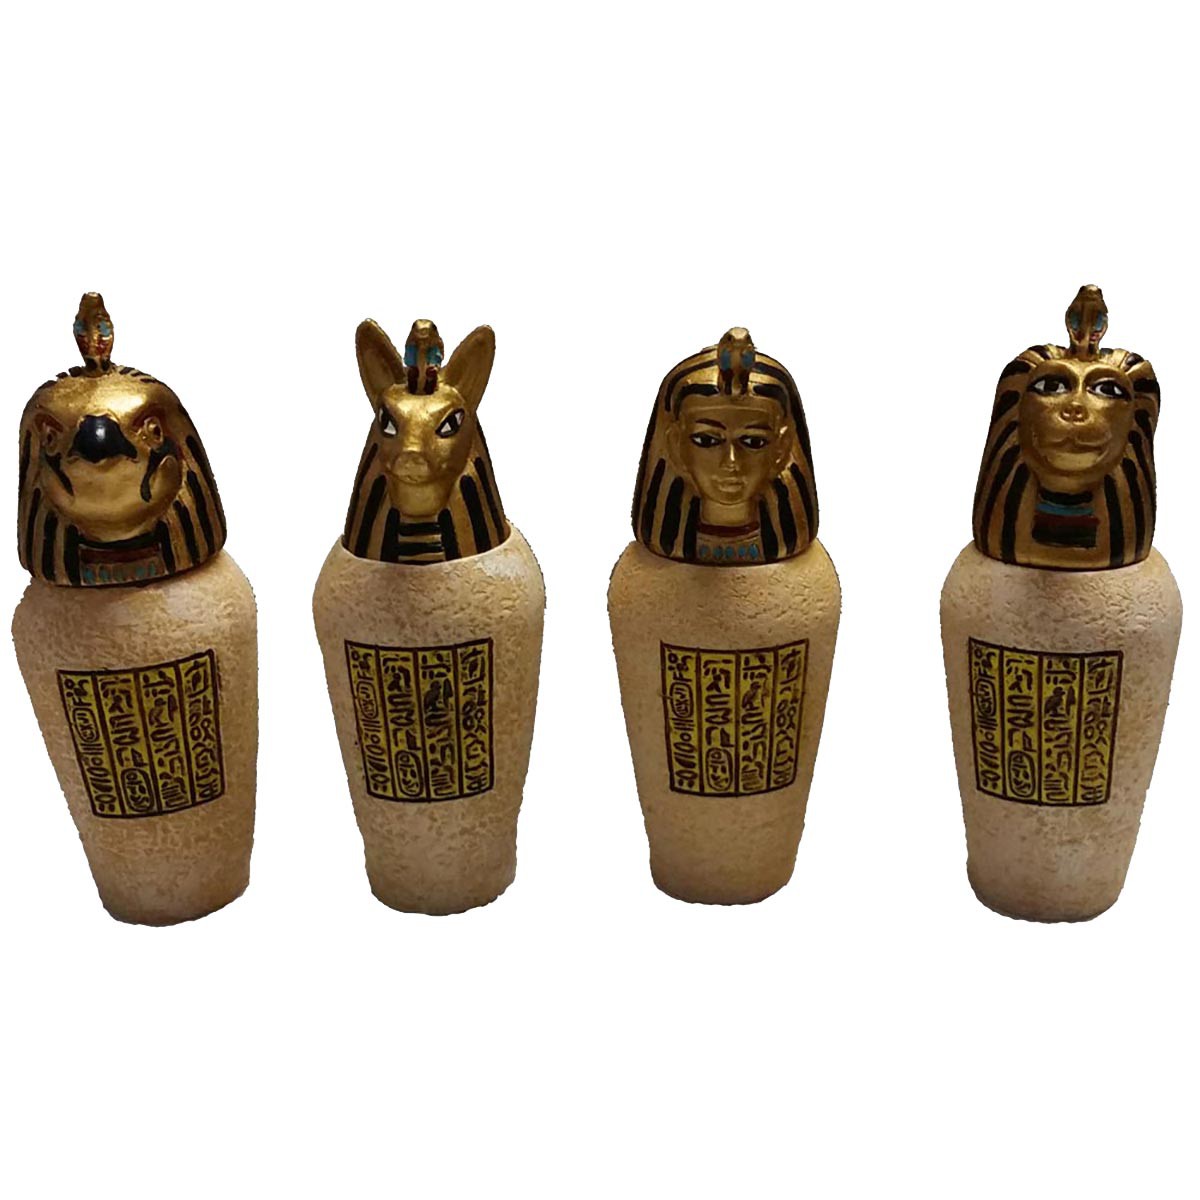 Ägyptische Kanopen 4-er Set Amset, Duamutef, Hapi, Kebechsenef - Bild 1 von 1